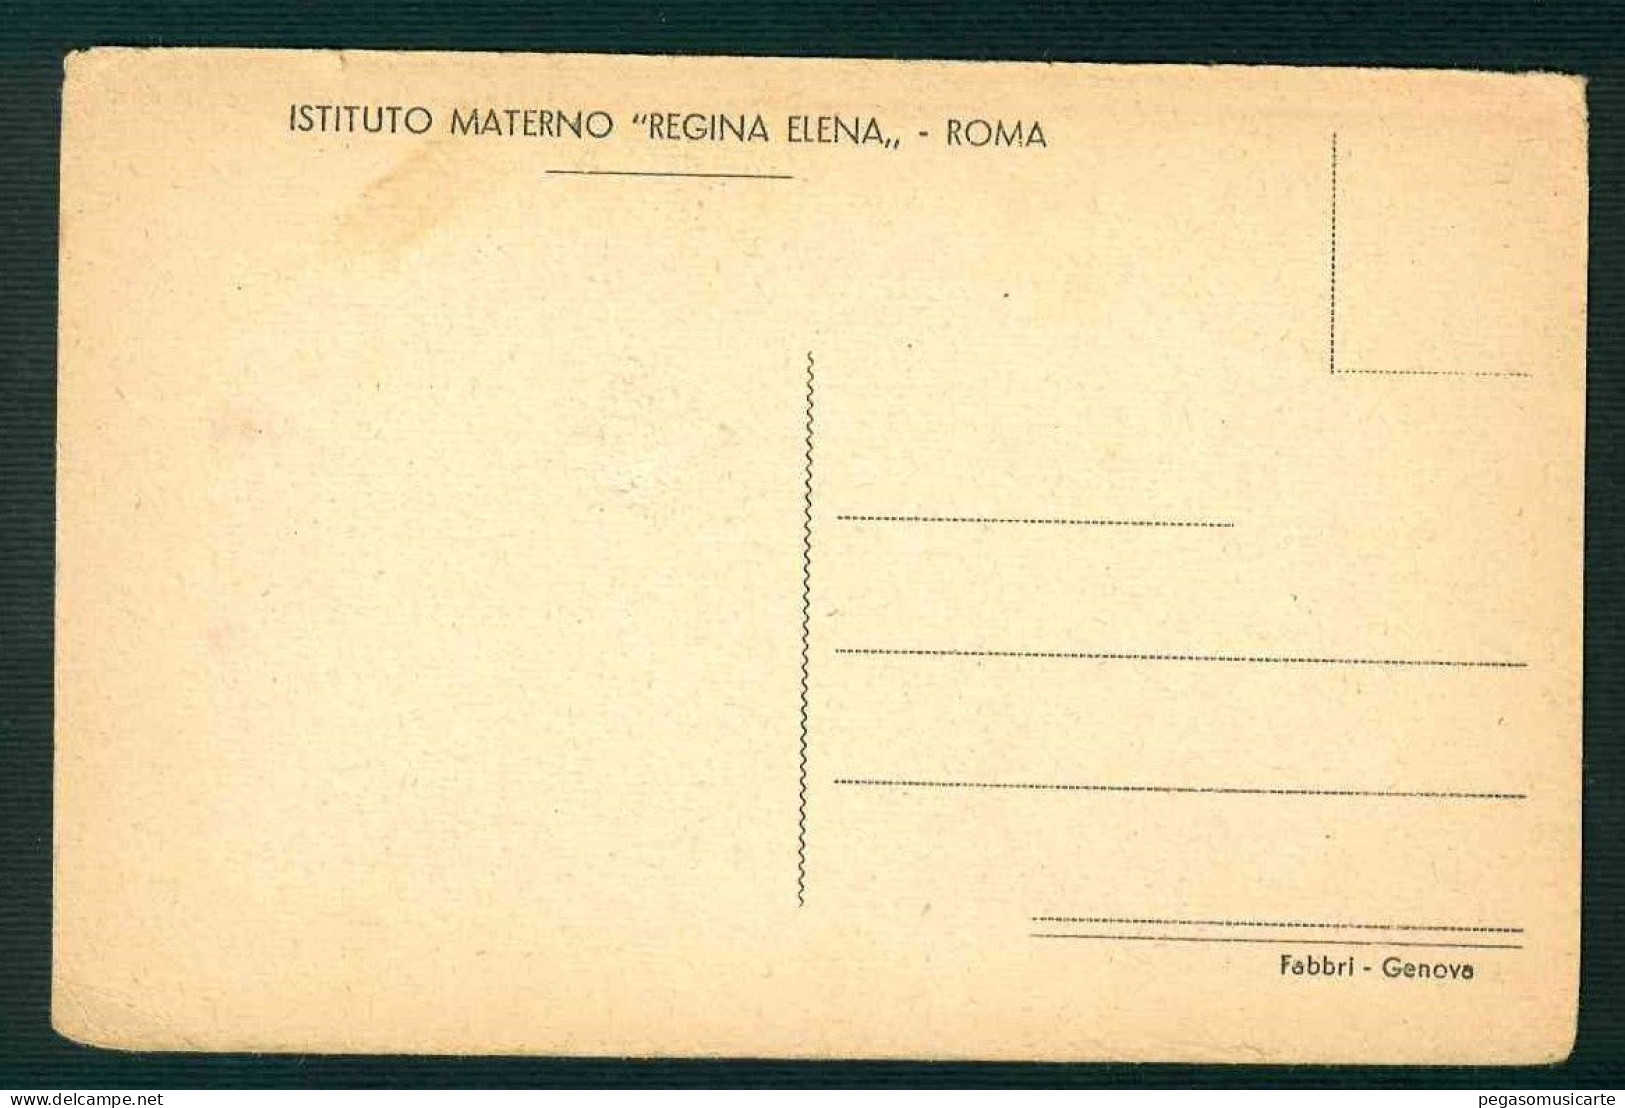 BA298 - ISTITUTO MATERNO REGINA ELENA - ROMA - CAMERA PARTICOLARE 1930 CIRCA - Educazione, Scuole E Università